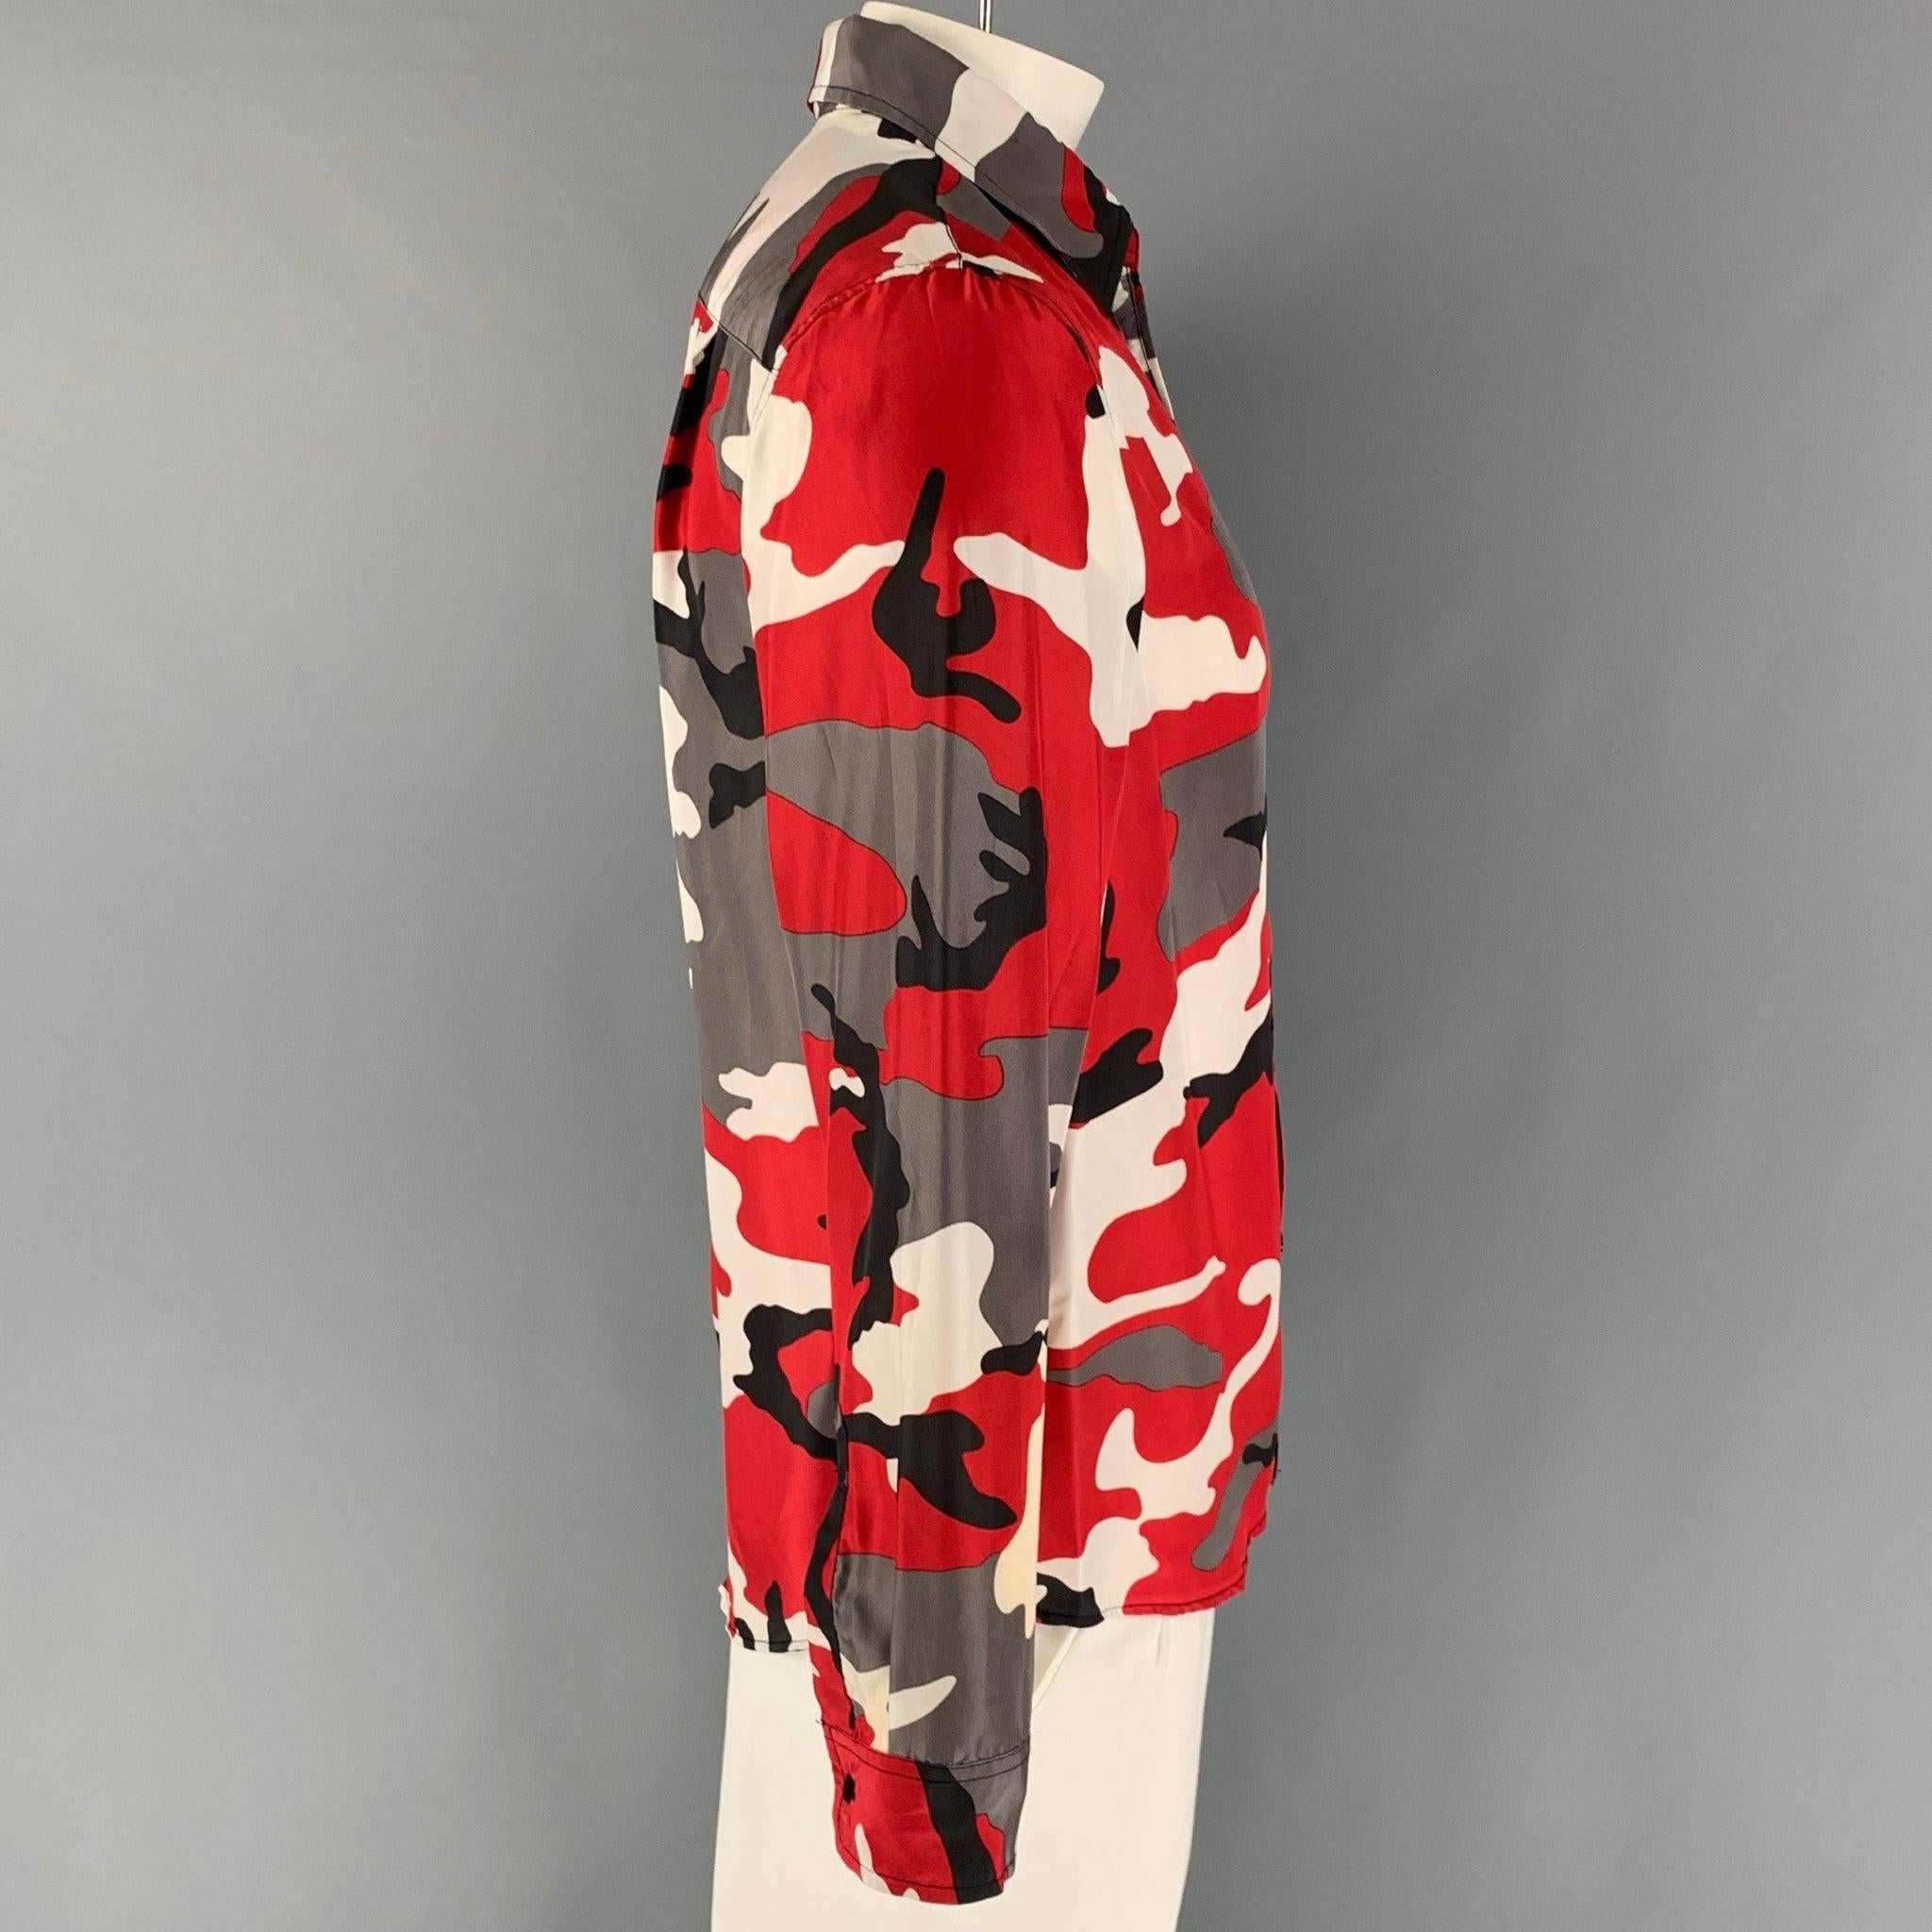 SUPREME SS 19 Collection Langarm-Shorts aus grau-grauer Camouflage-Seide, mit Stehkragen, aufgesetzten Taschen und Knopfverschluss.
Sehr gut
Gebrauchtes Zustand. 

Markiert:   M  

Abmessungen: 
 
Schultern: 17,5 Zoll  Brustkorb: 42 Zoll  Ärmel: 26